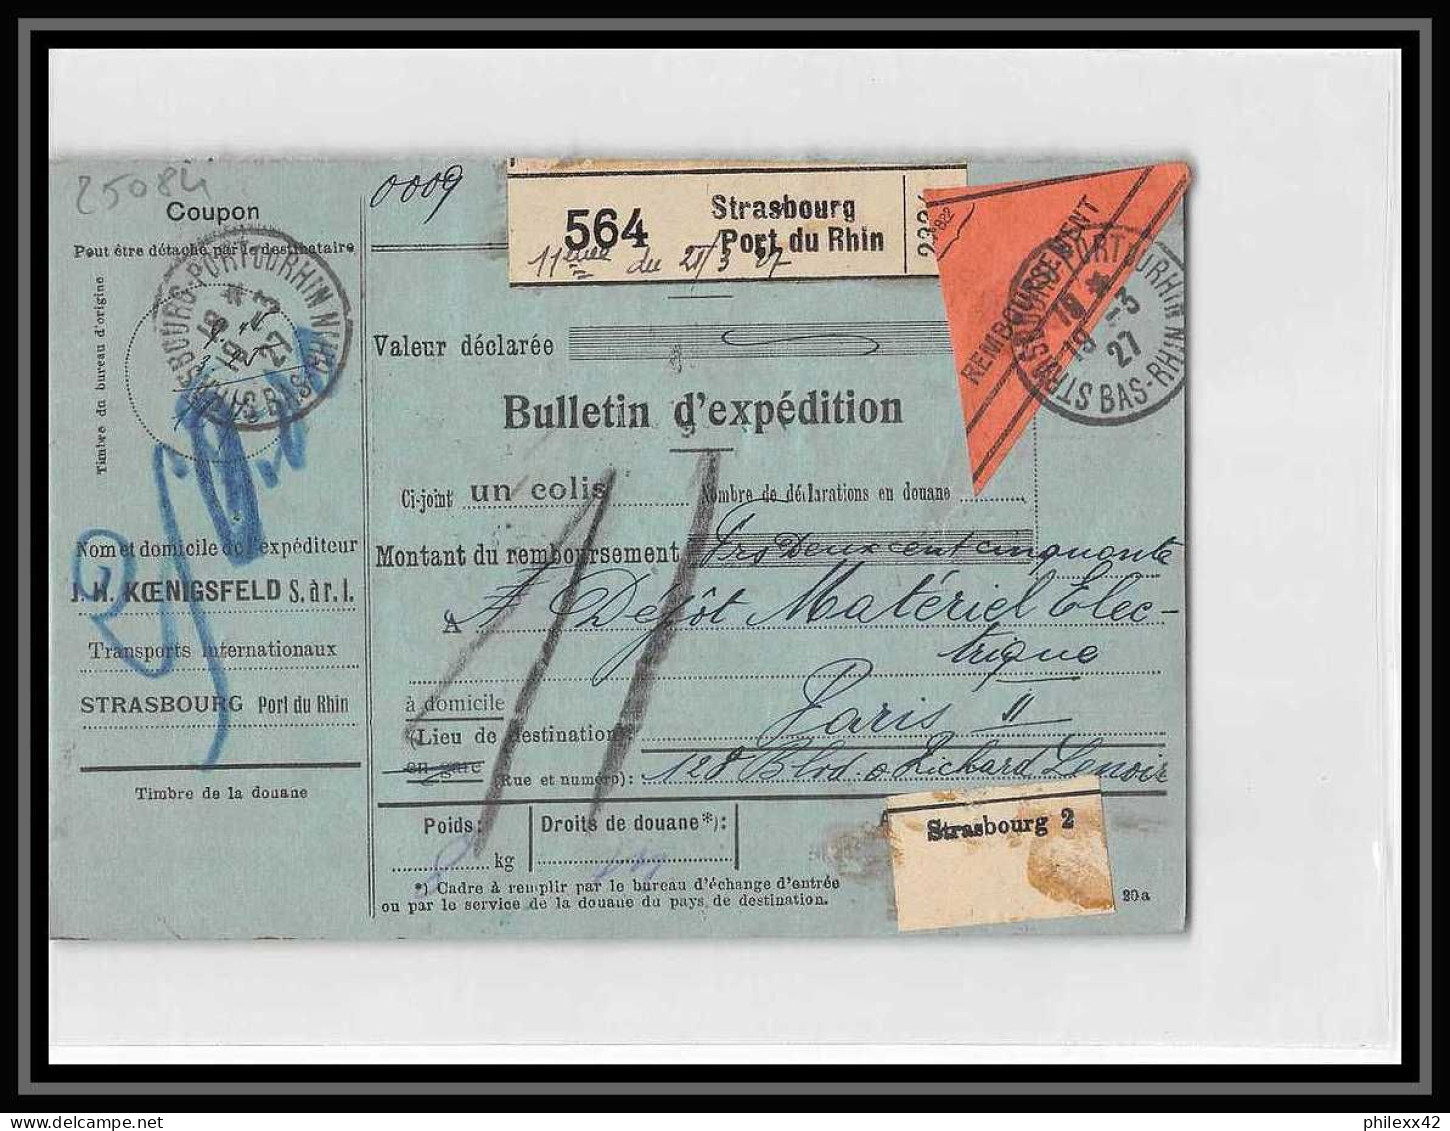 25084 Bulletin D'expédition France Colis Postaux Fiscal Haut Rhin Strasbourg 1927 Merson 145 Contre Remboursement - Storia Postale